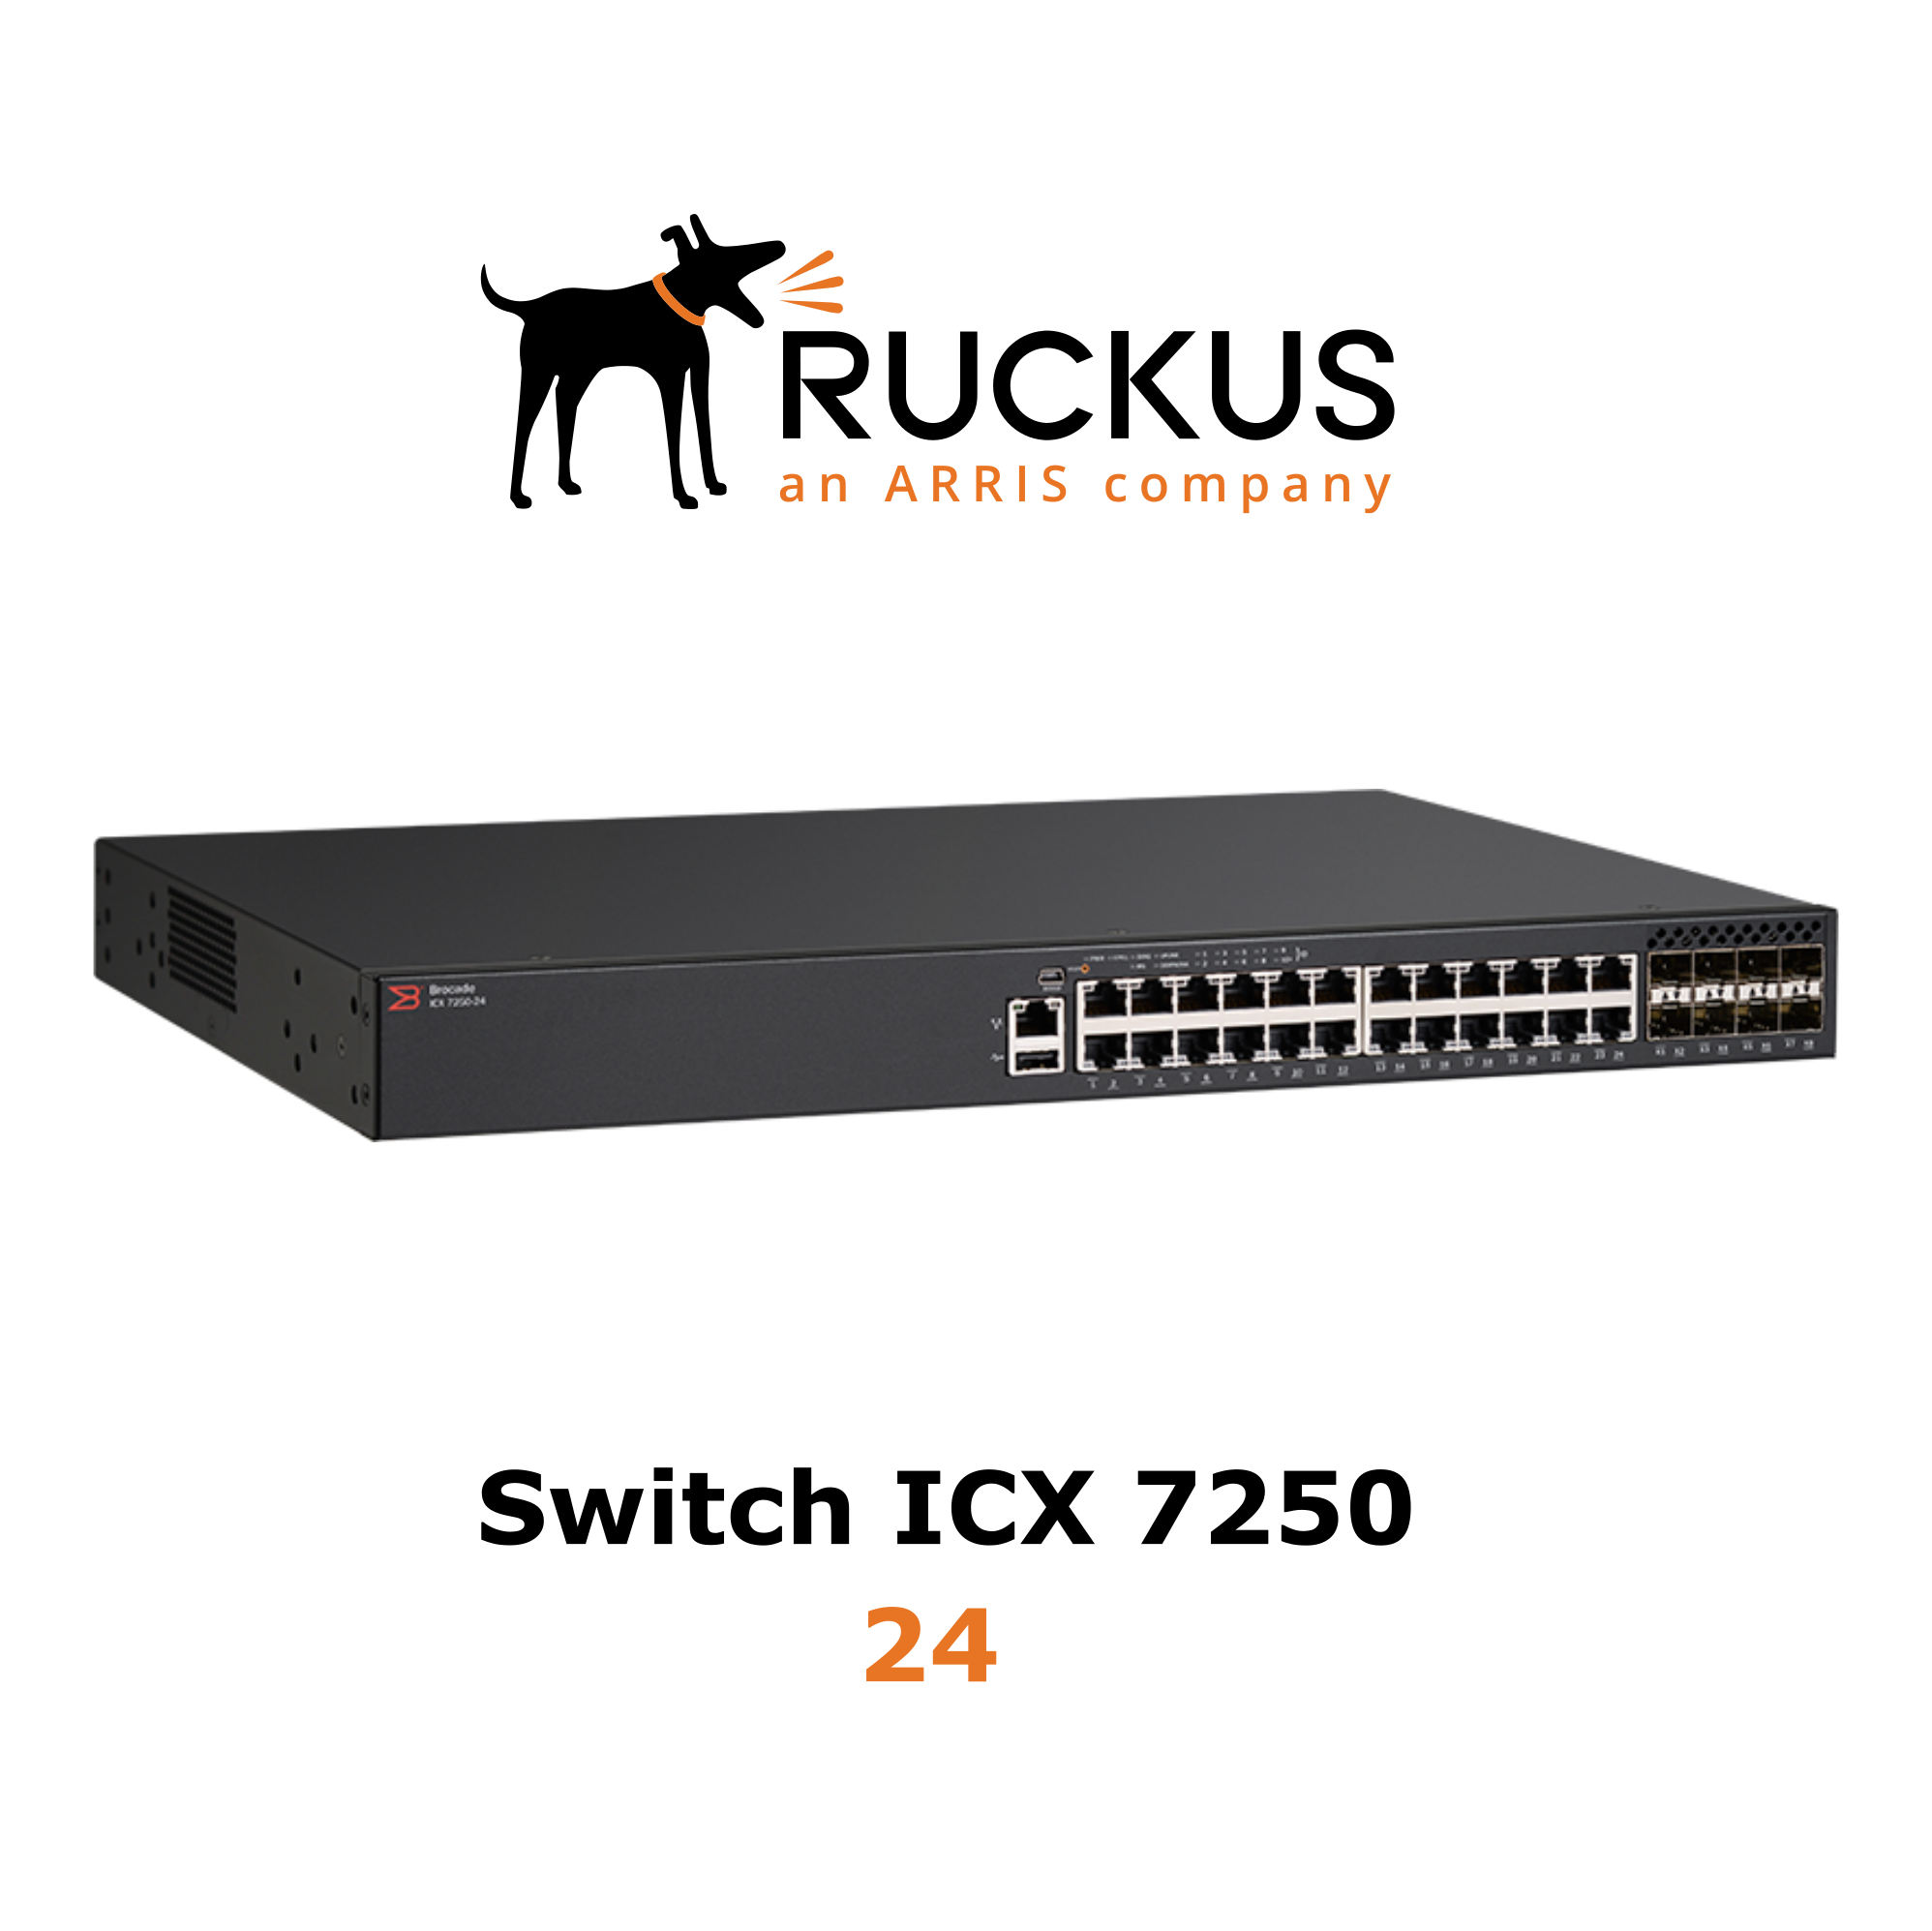 Ruckus ICX 7250-24 Switch